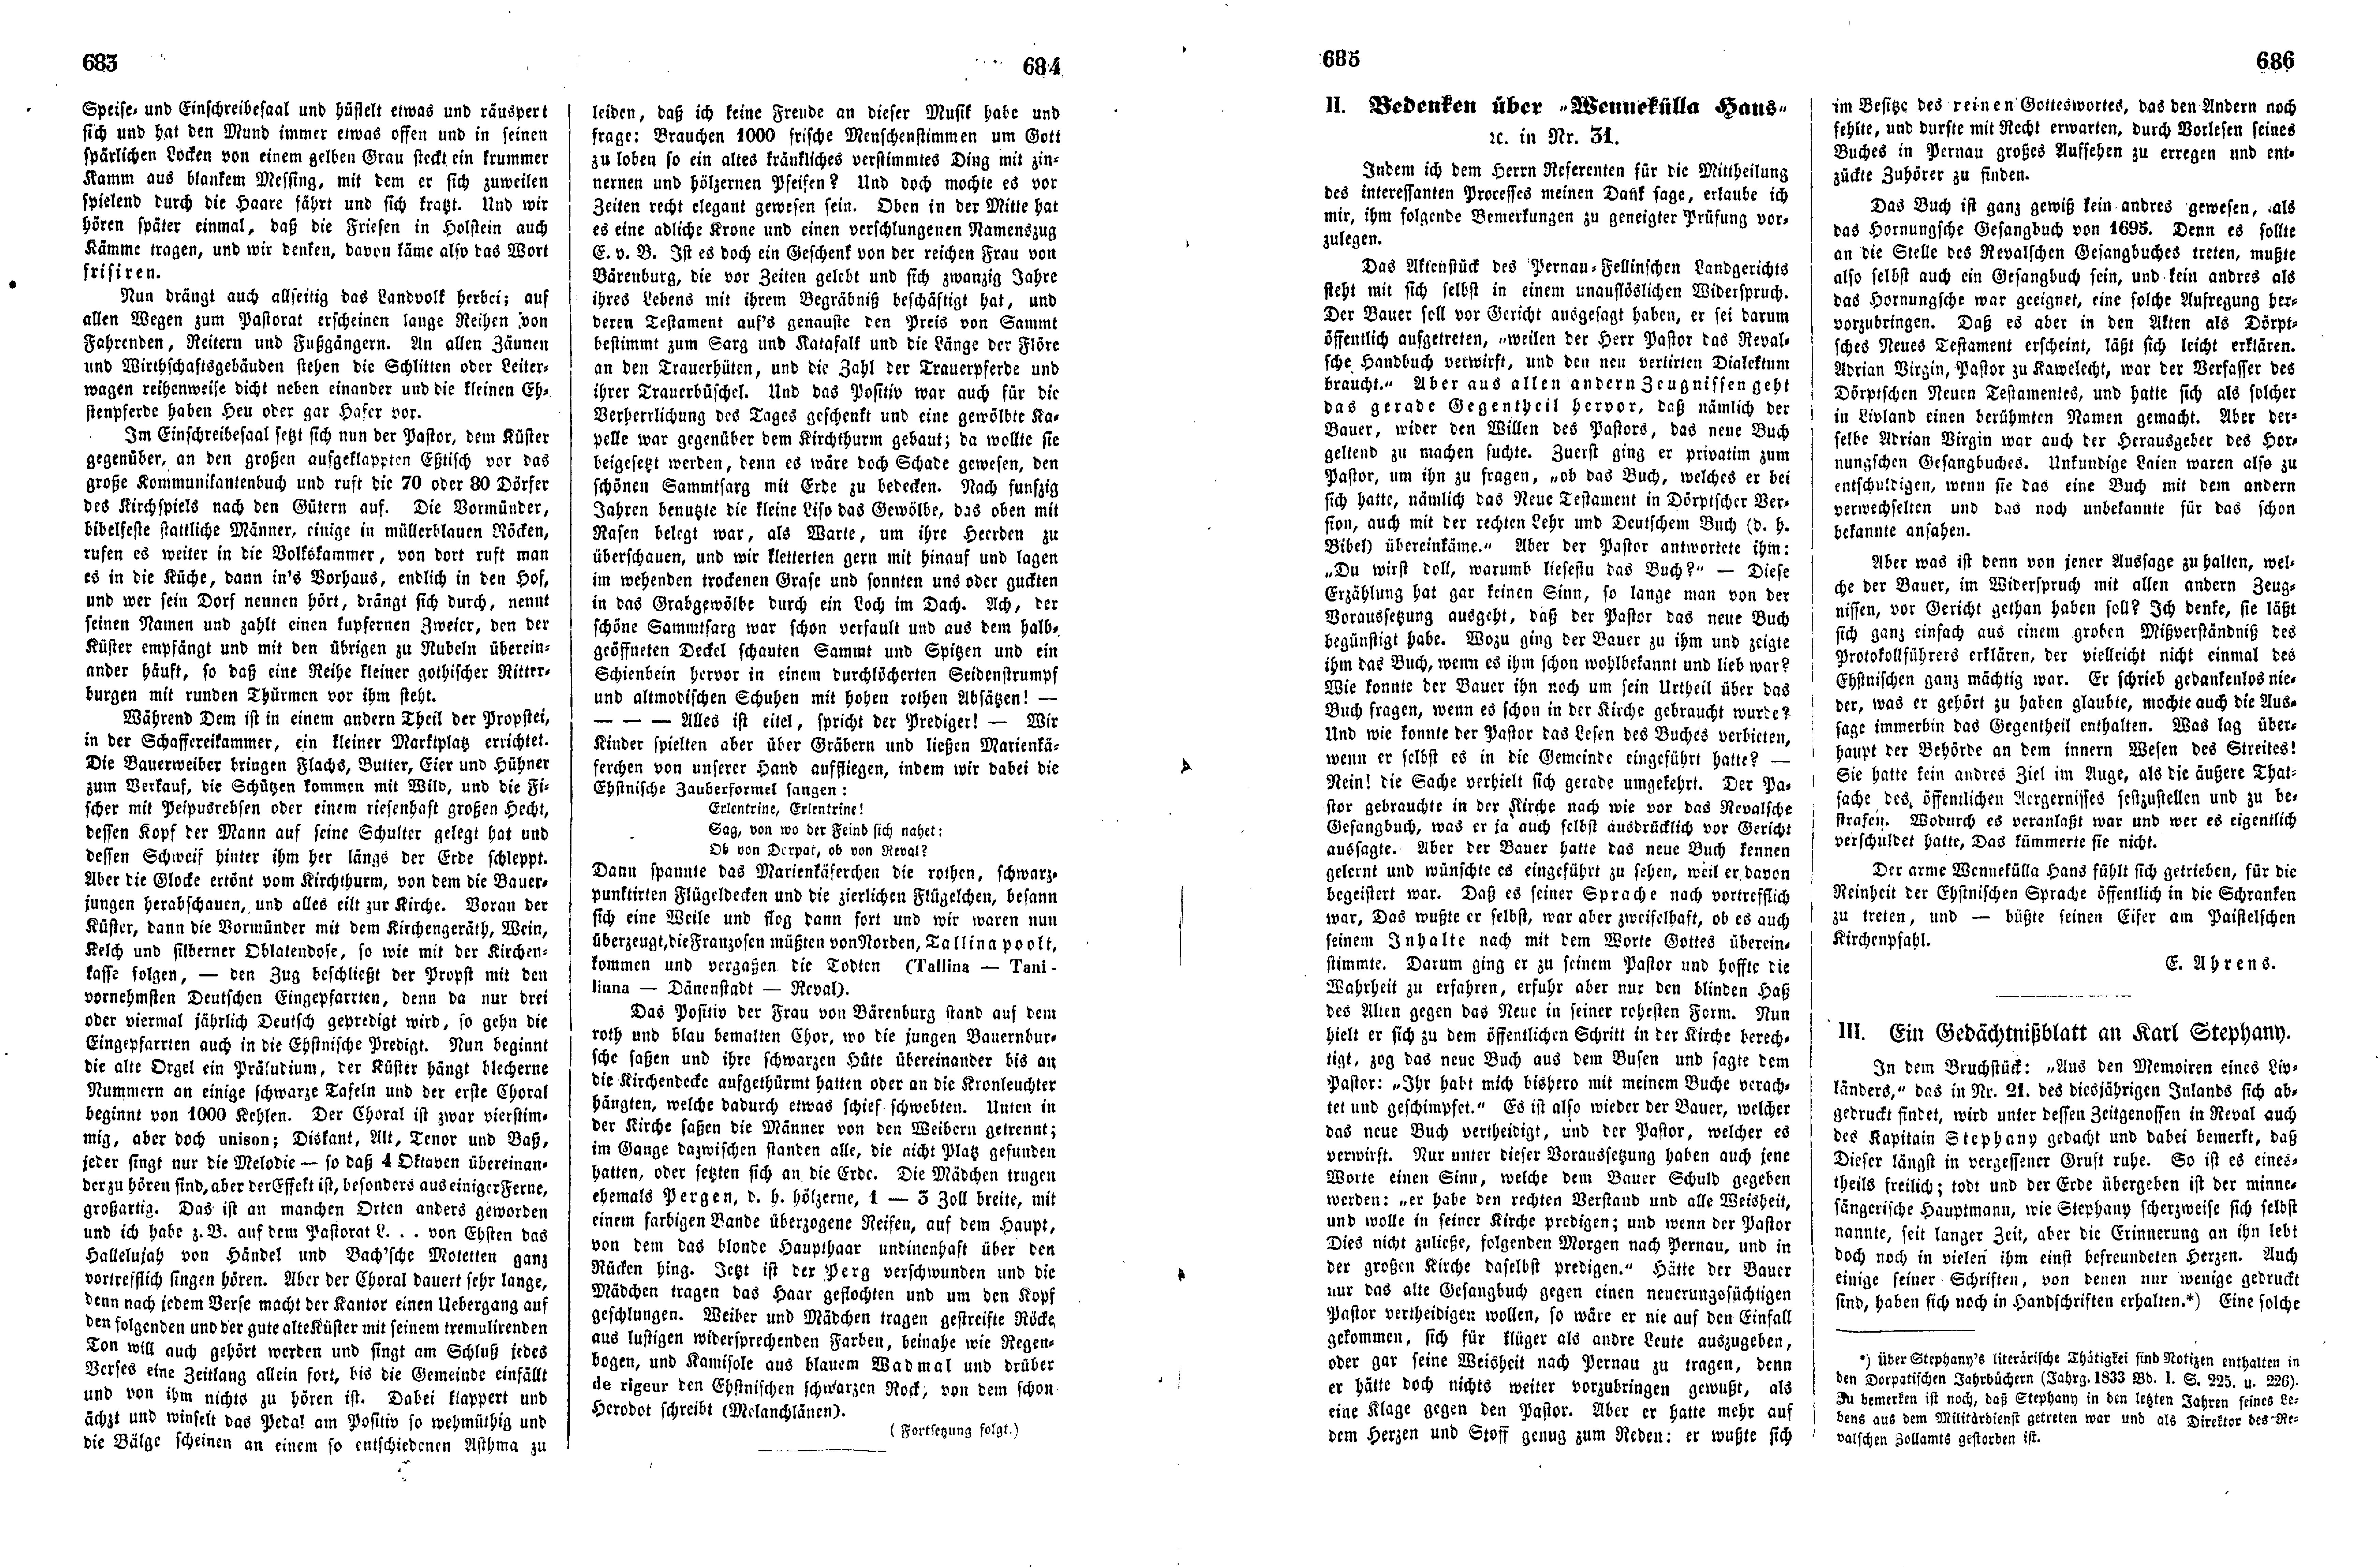 Das Inland [17] (1852) | 176. (683-686) Основной текст